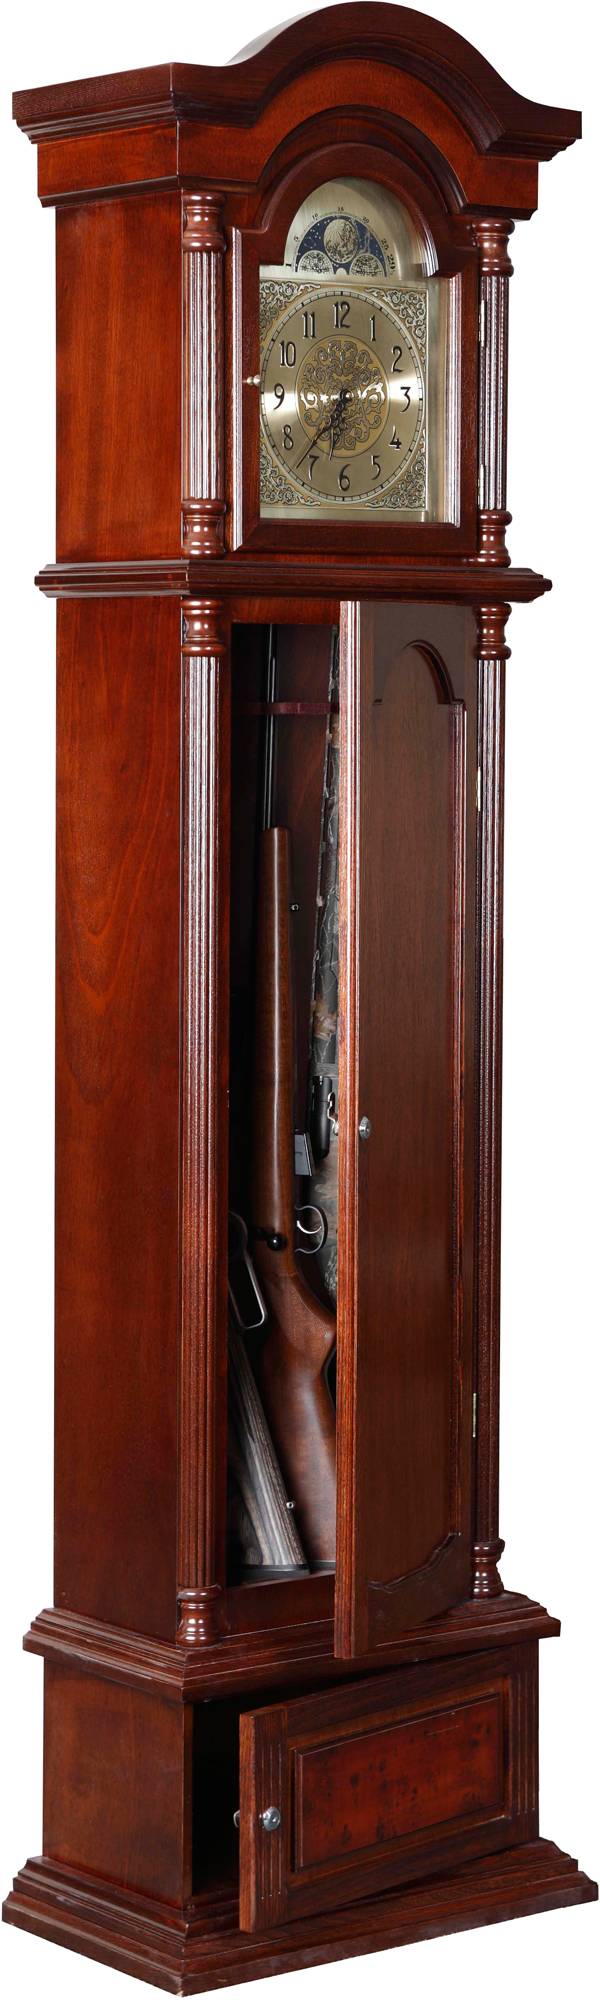 American Furniture Classics The Gunfather Clock 6 Gun Cabinet Dick S Sporting Goods